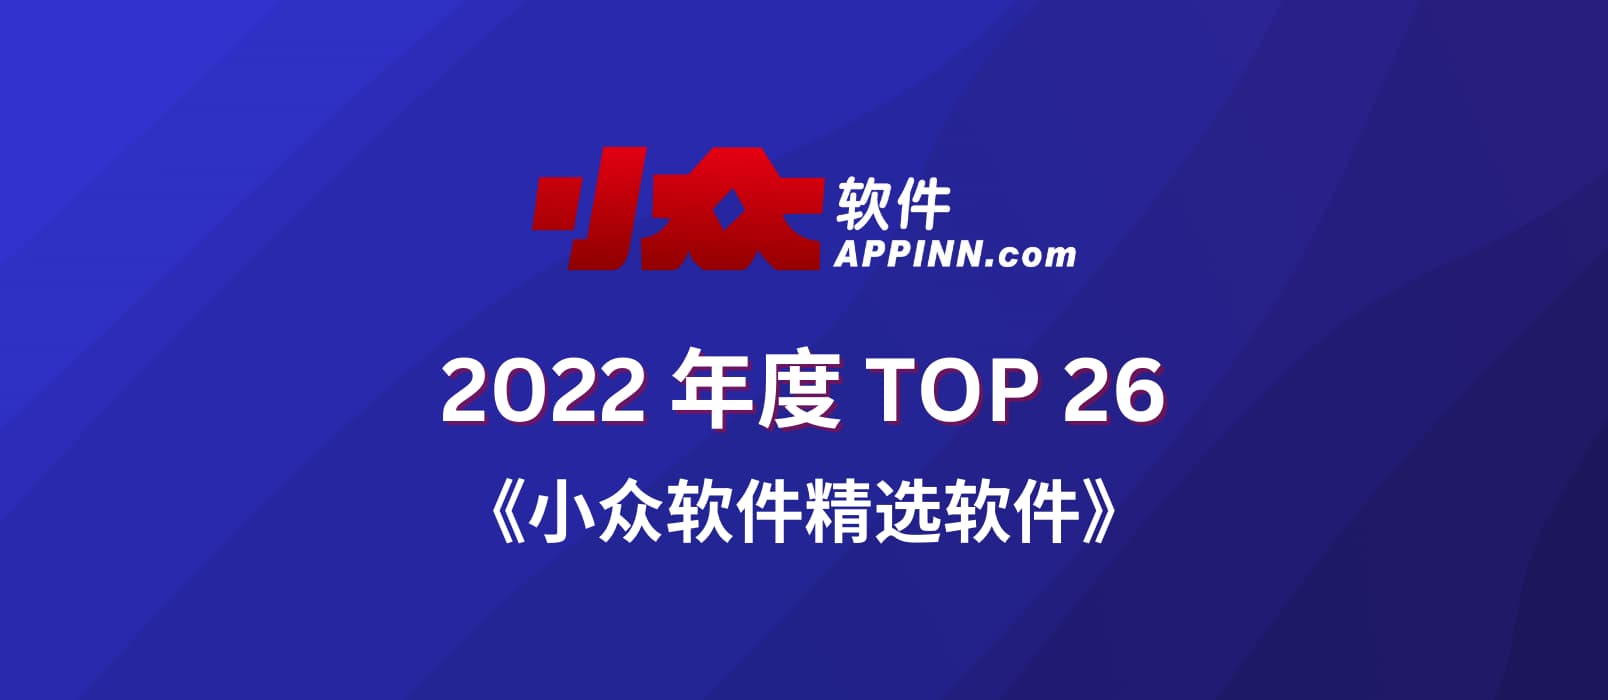 2022 小众软件精选软件 TOP 26【第二部分】